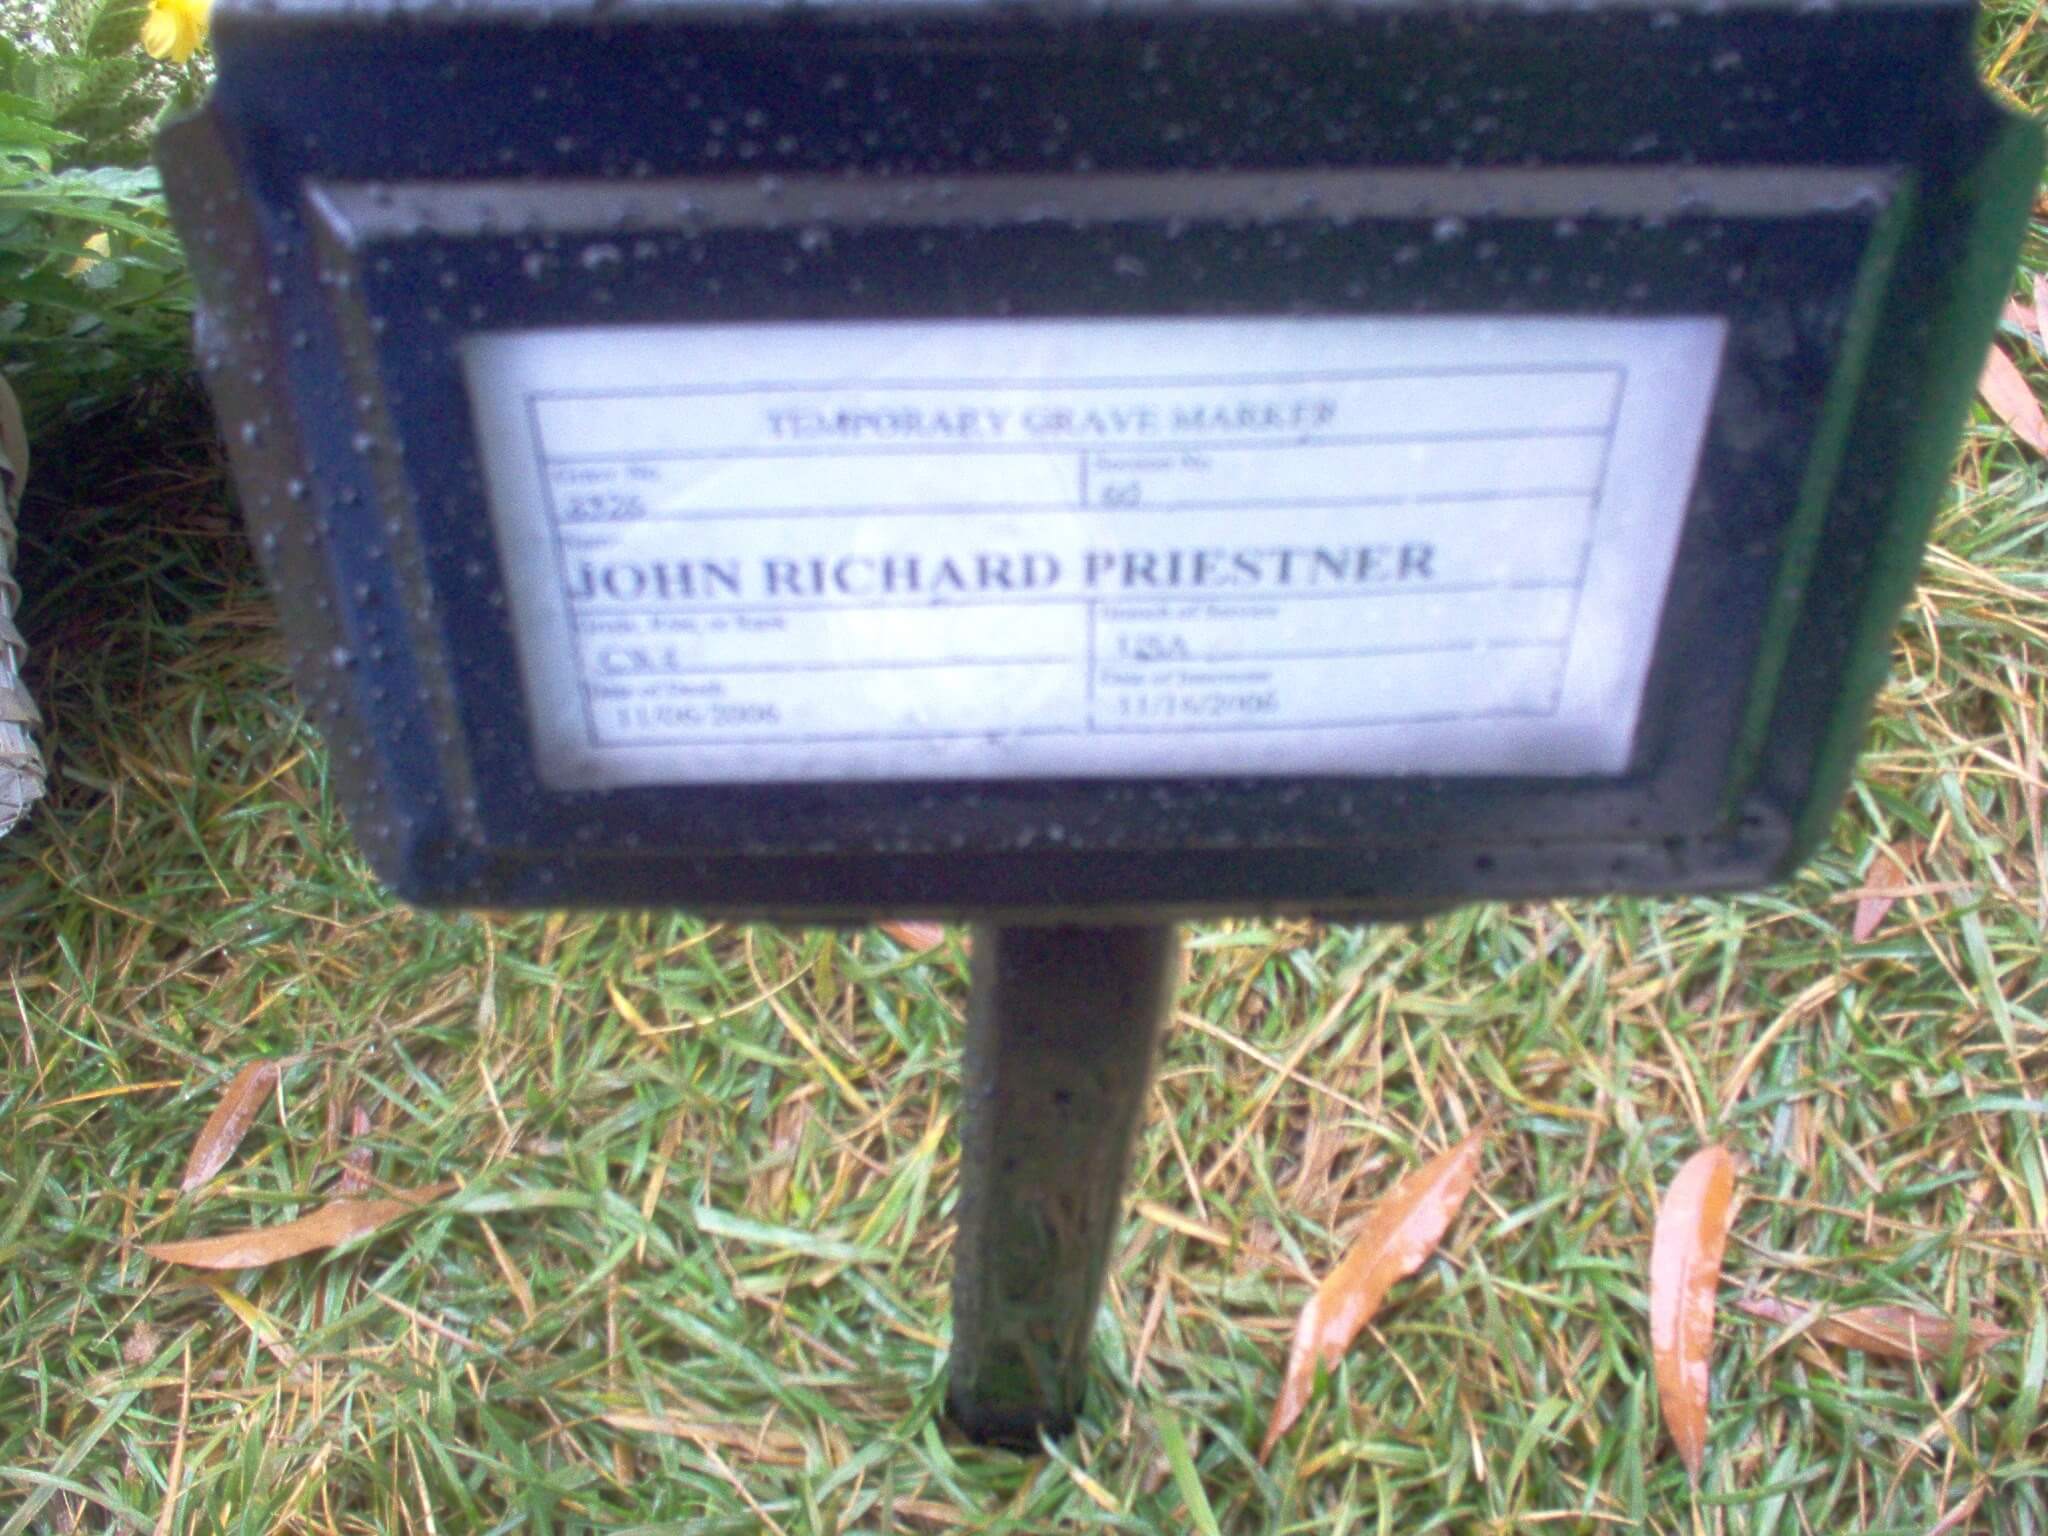 jrpriestner-gravesite-photo-november-2006-001